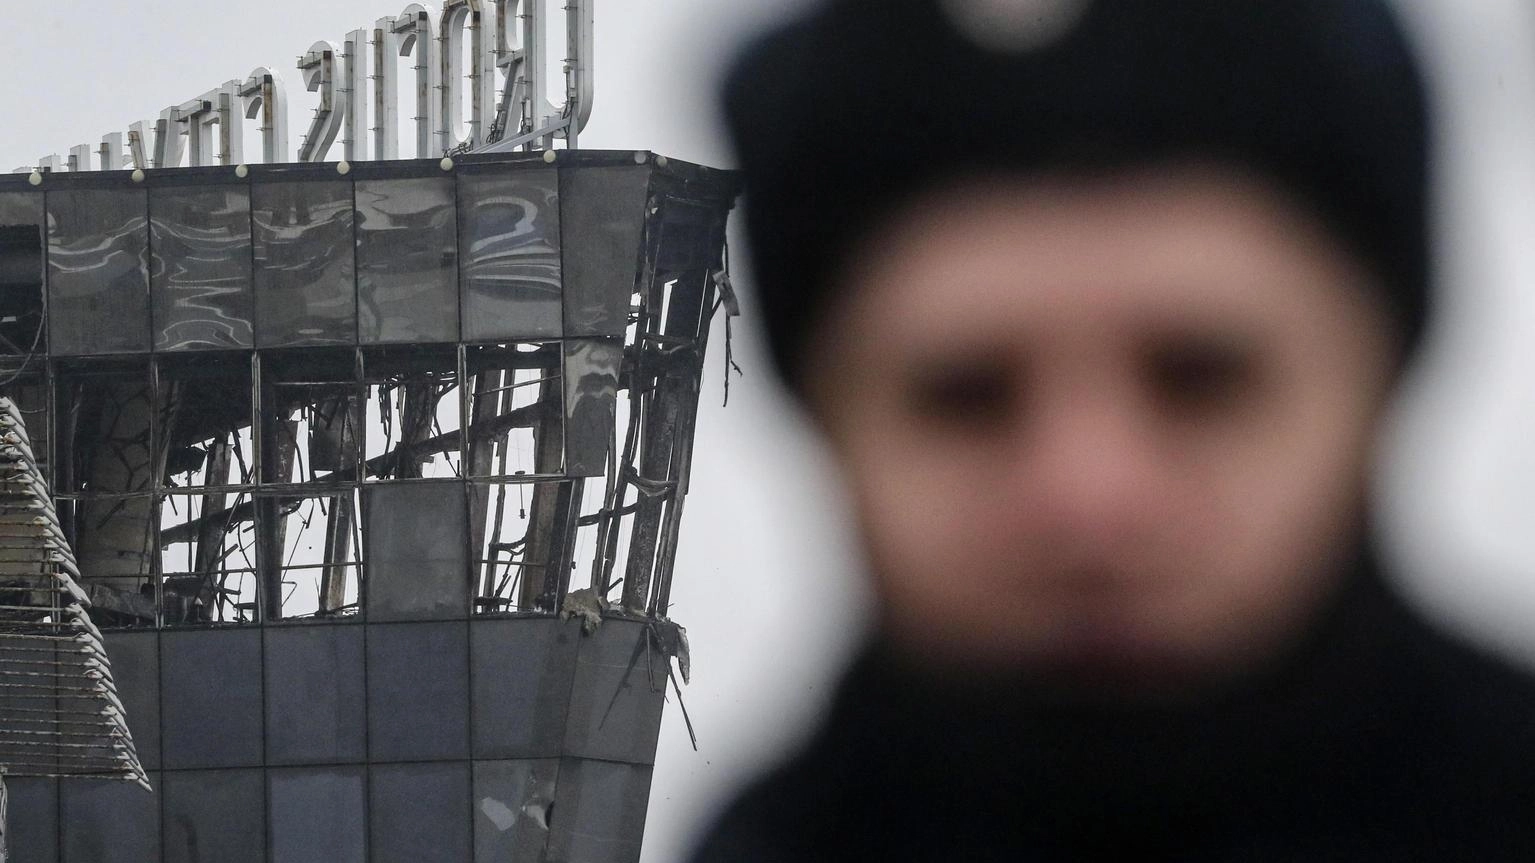 Putin, da Ucraina 'finestra' per fare entrare attentatori